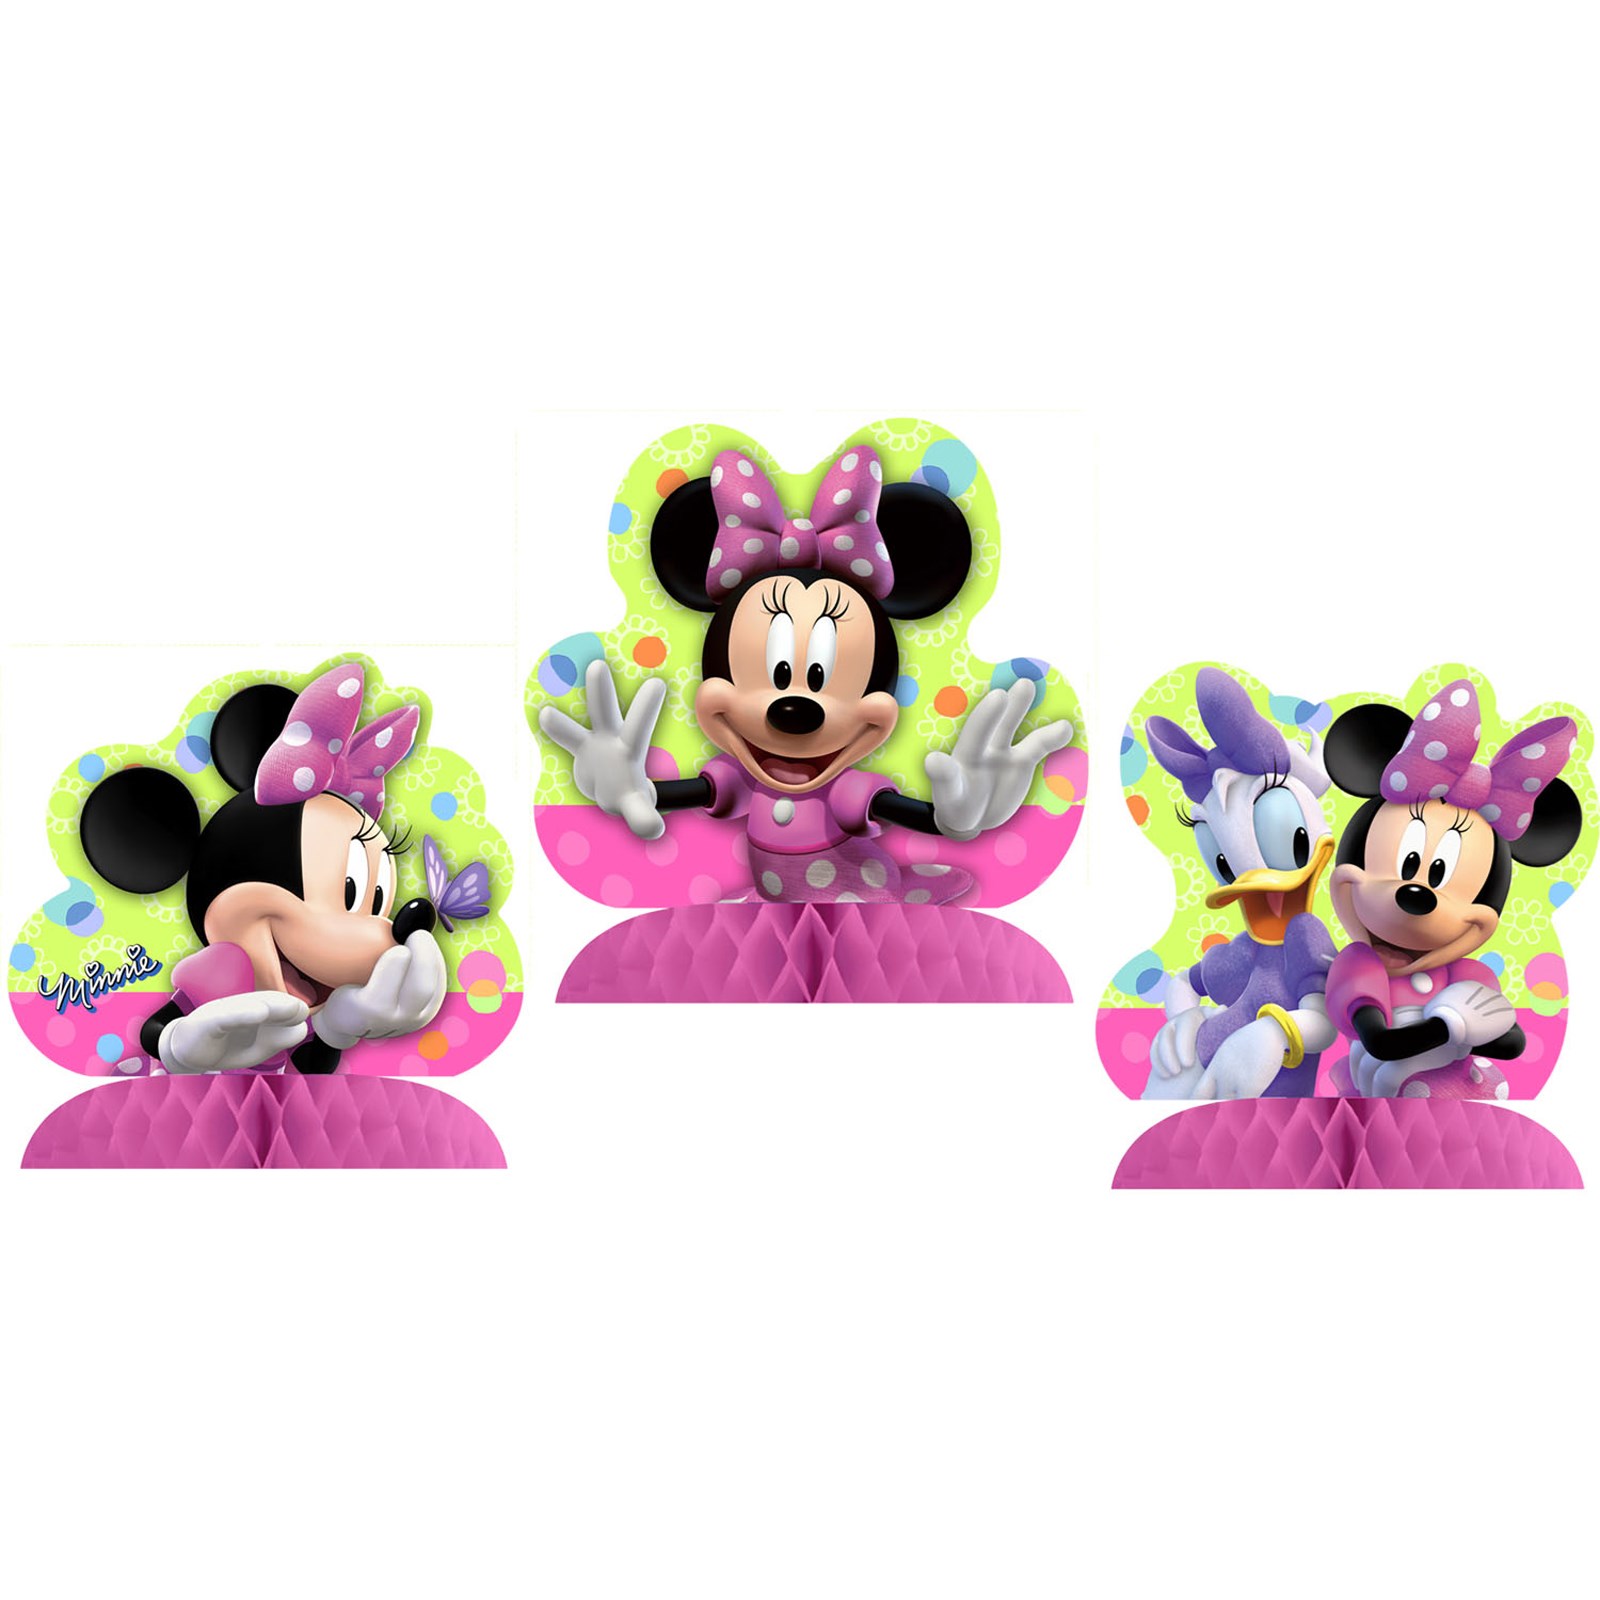 Disney Minnie Mouse Bow-tique Centerpiece